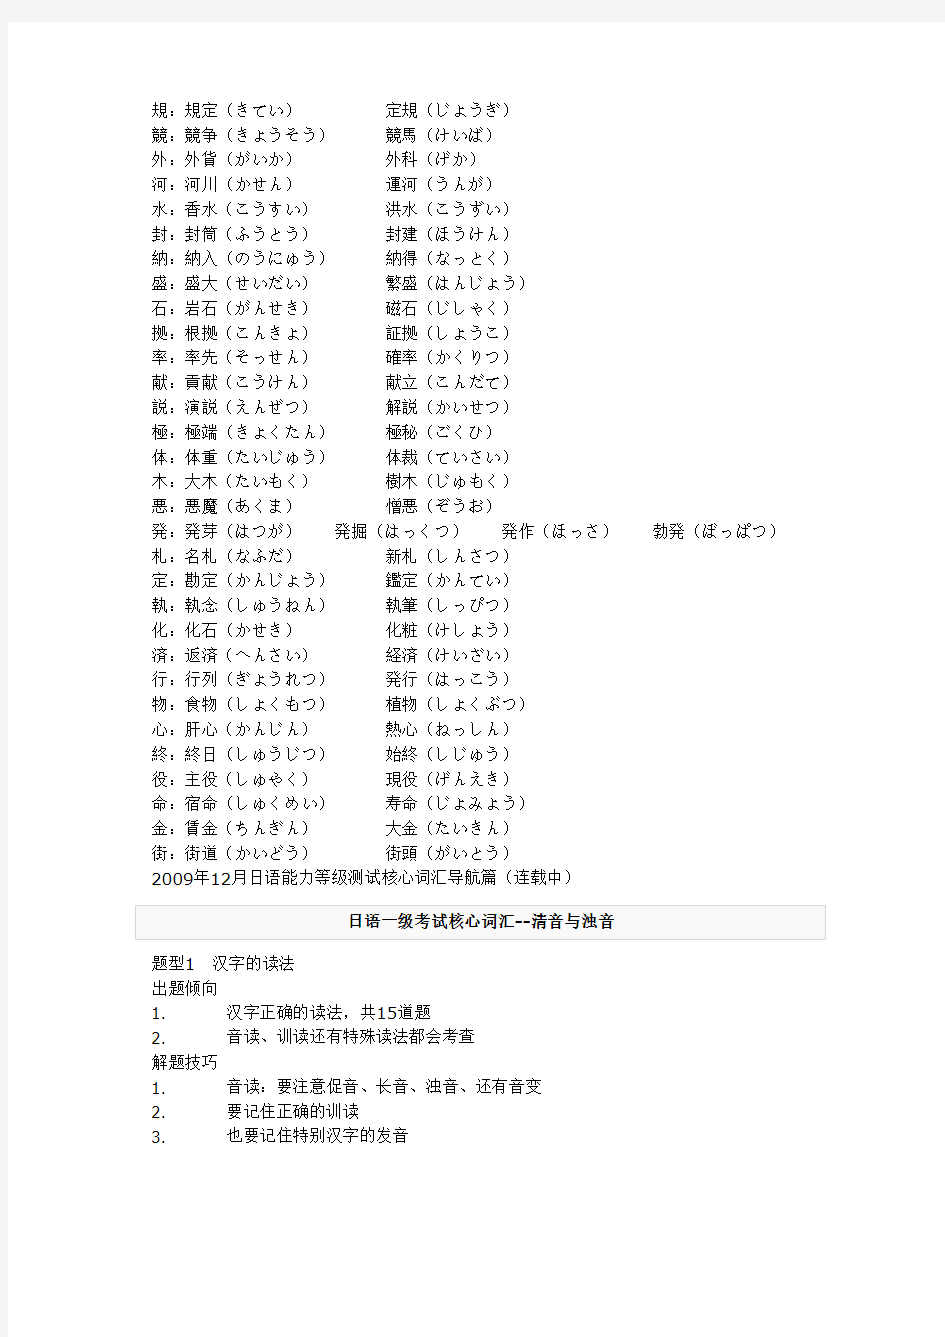 2015年日语N1考试核心词汇笔记总结